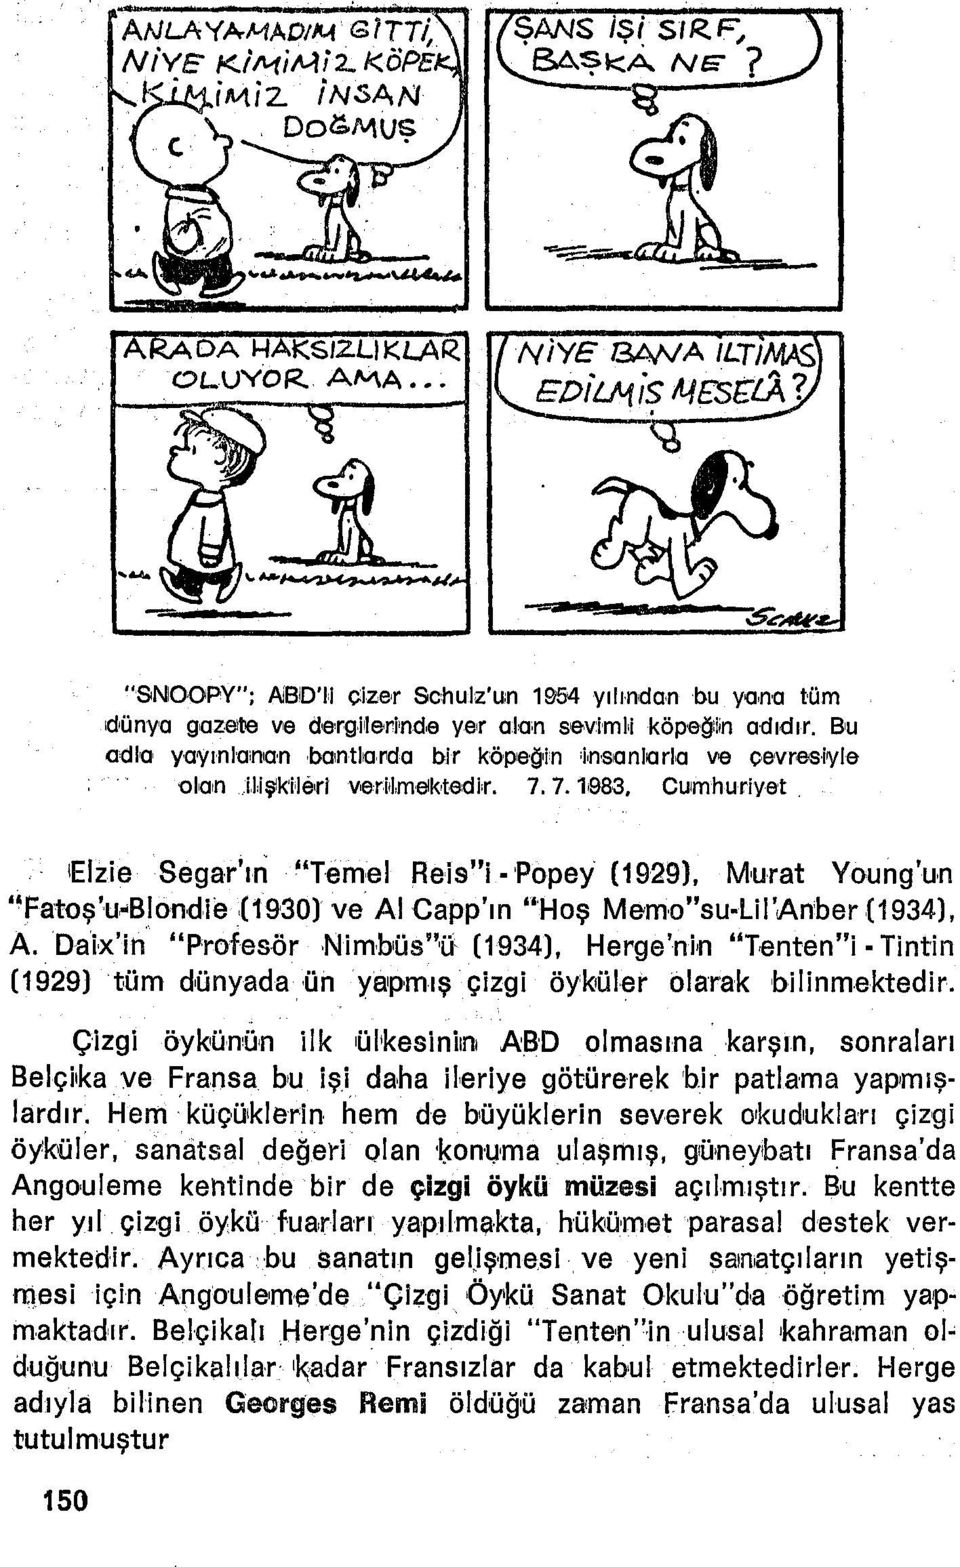 ıelzie Segar'ıri "Temel Reis"i Popey (1929), Murat Young'un "Fatoş'u-Blondıe 09'30) ve AI Gapp'ın "Hoş Memo"su-UI'Anber (1934), A.Dalx'in "Profesör Nimbıüs"fı (1934), Herge'nin "Terıten"!